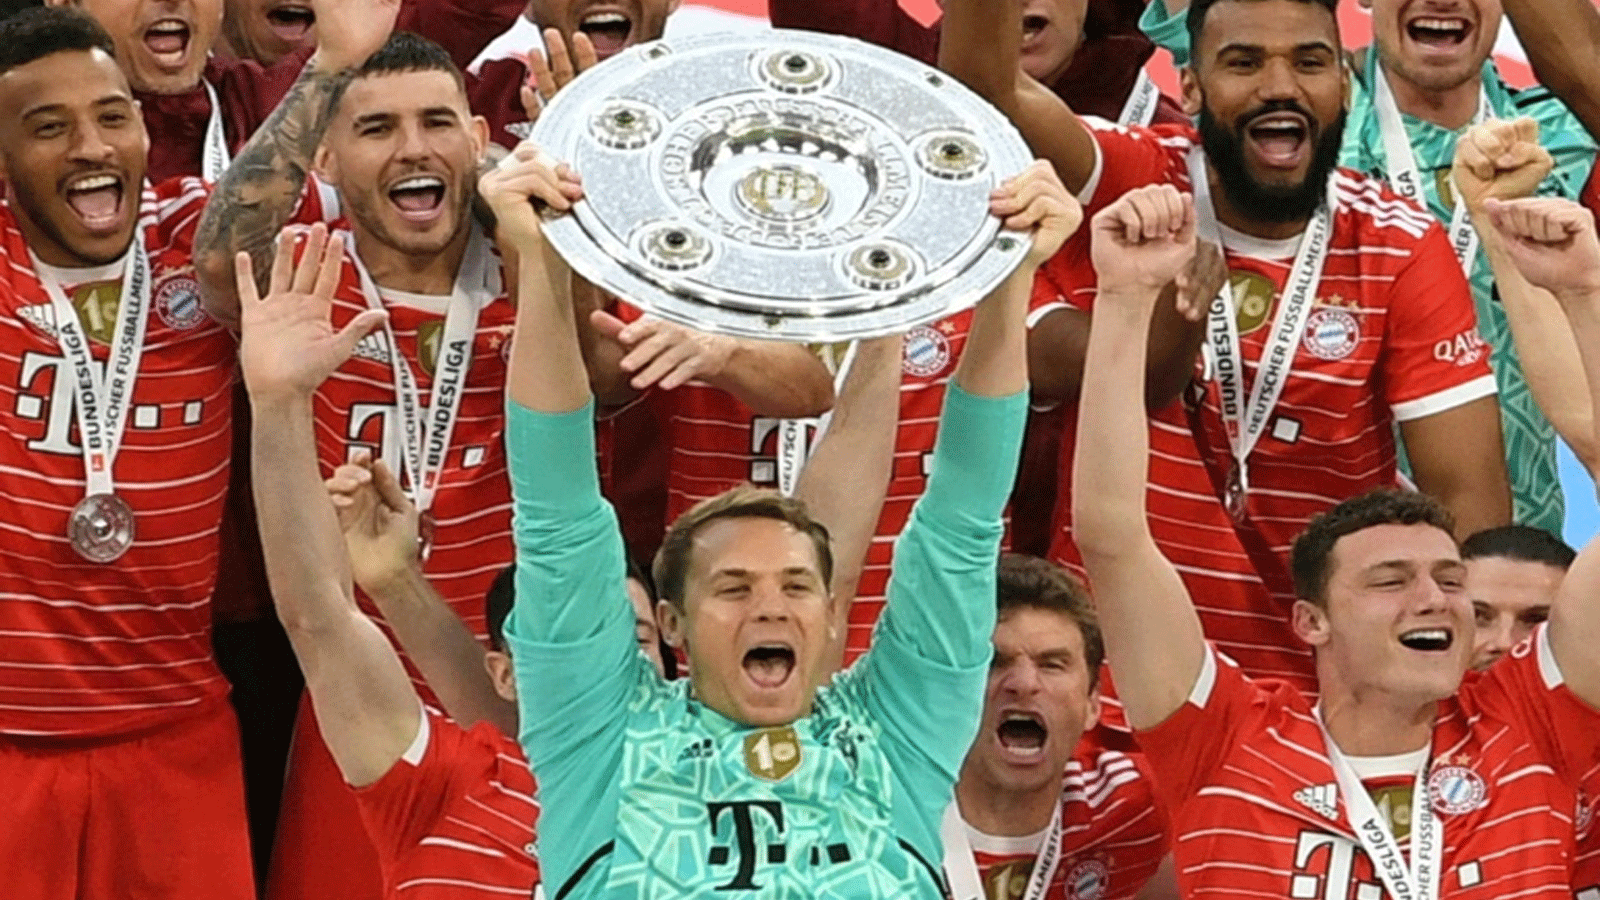 الحارس الدولي مانويل نوير يرفع درع الدوري الألماني لكرة القدم بعد تتويج بايرن ميونيخ باللقب للمرة العاشرة توالياً. ميونيخ، جنوب ألمانيا، في 8 أيار/مايو 2022